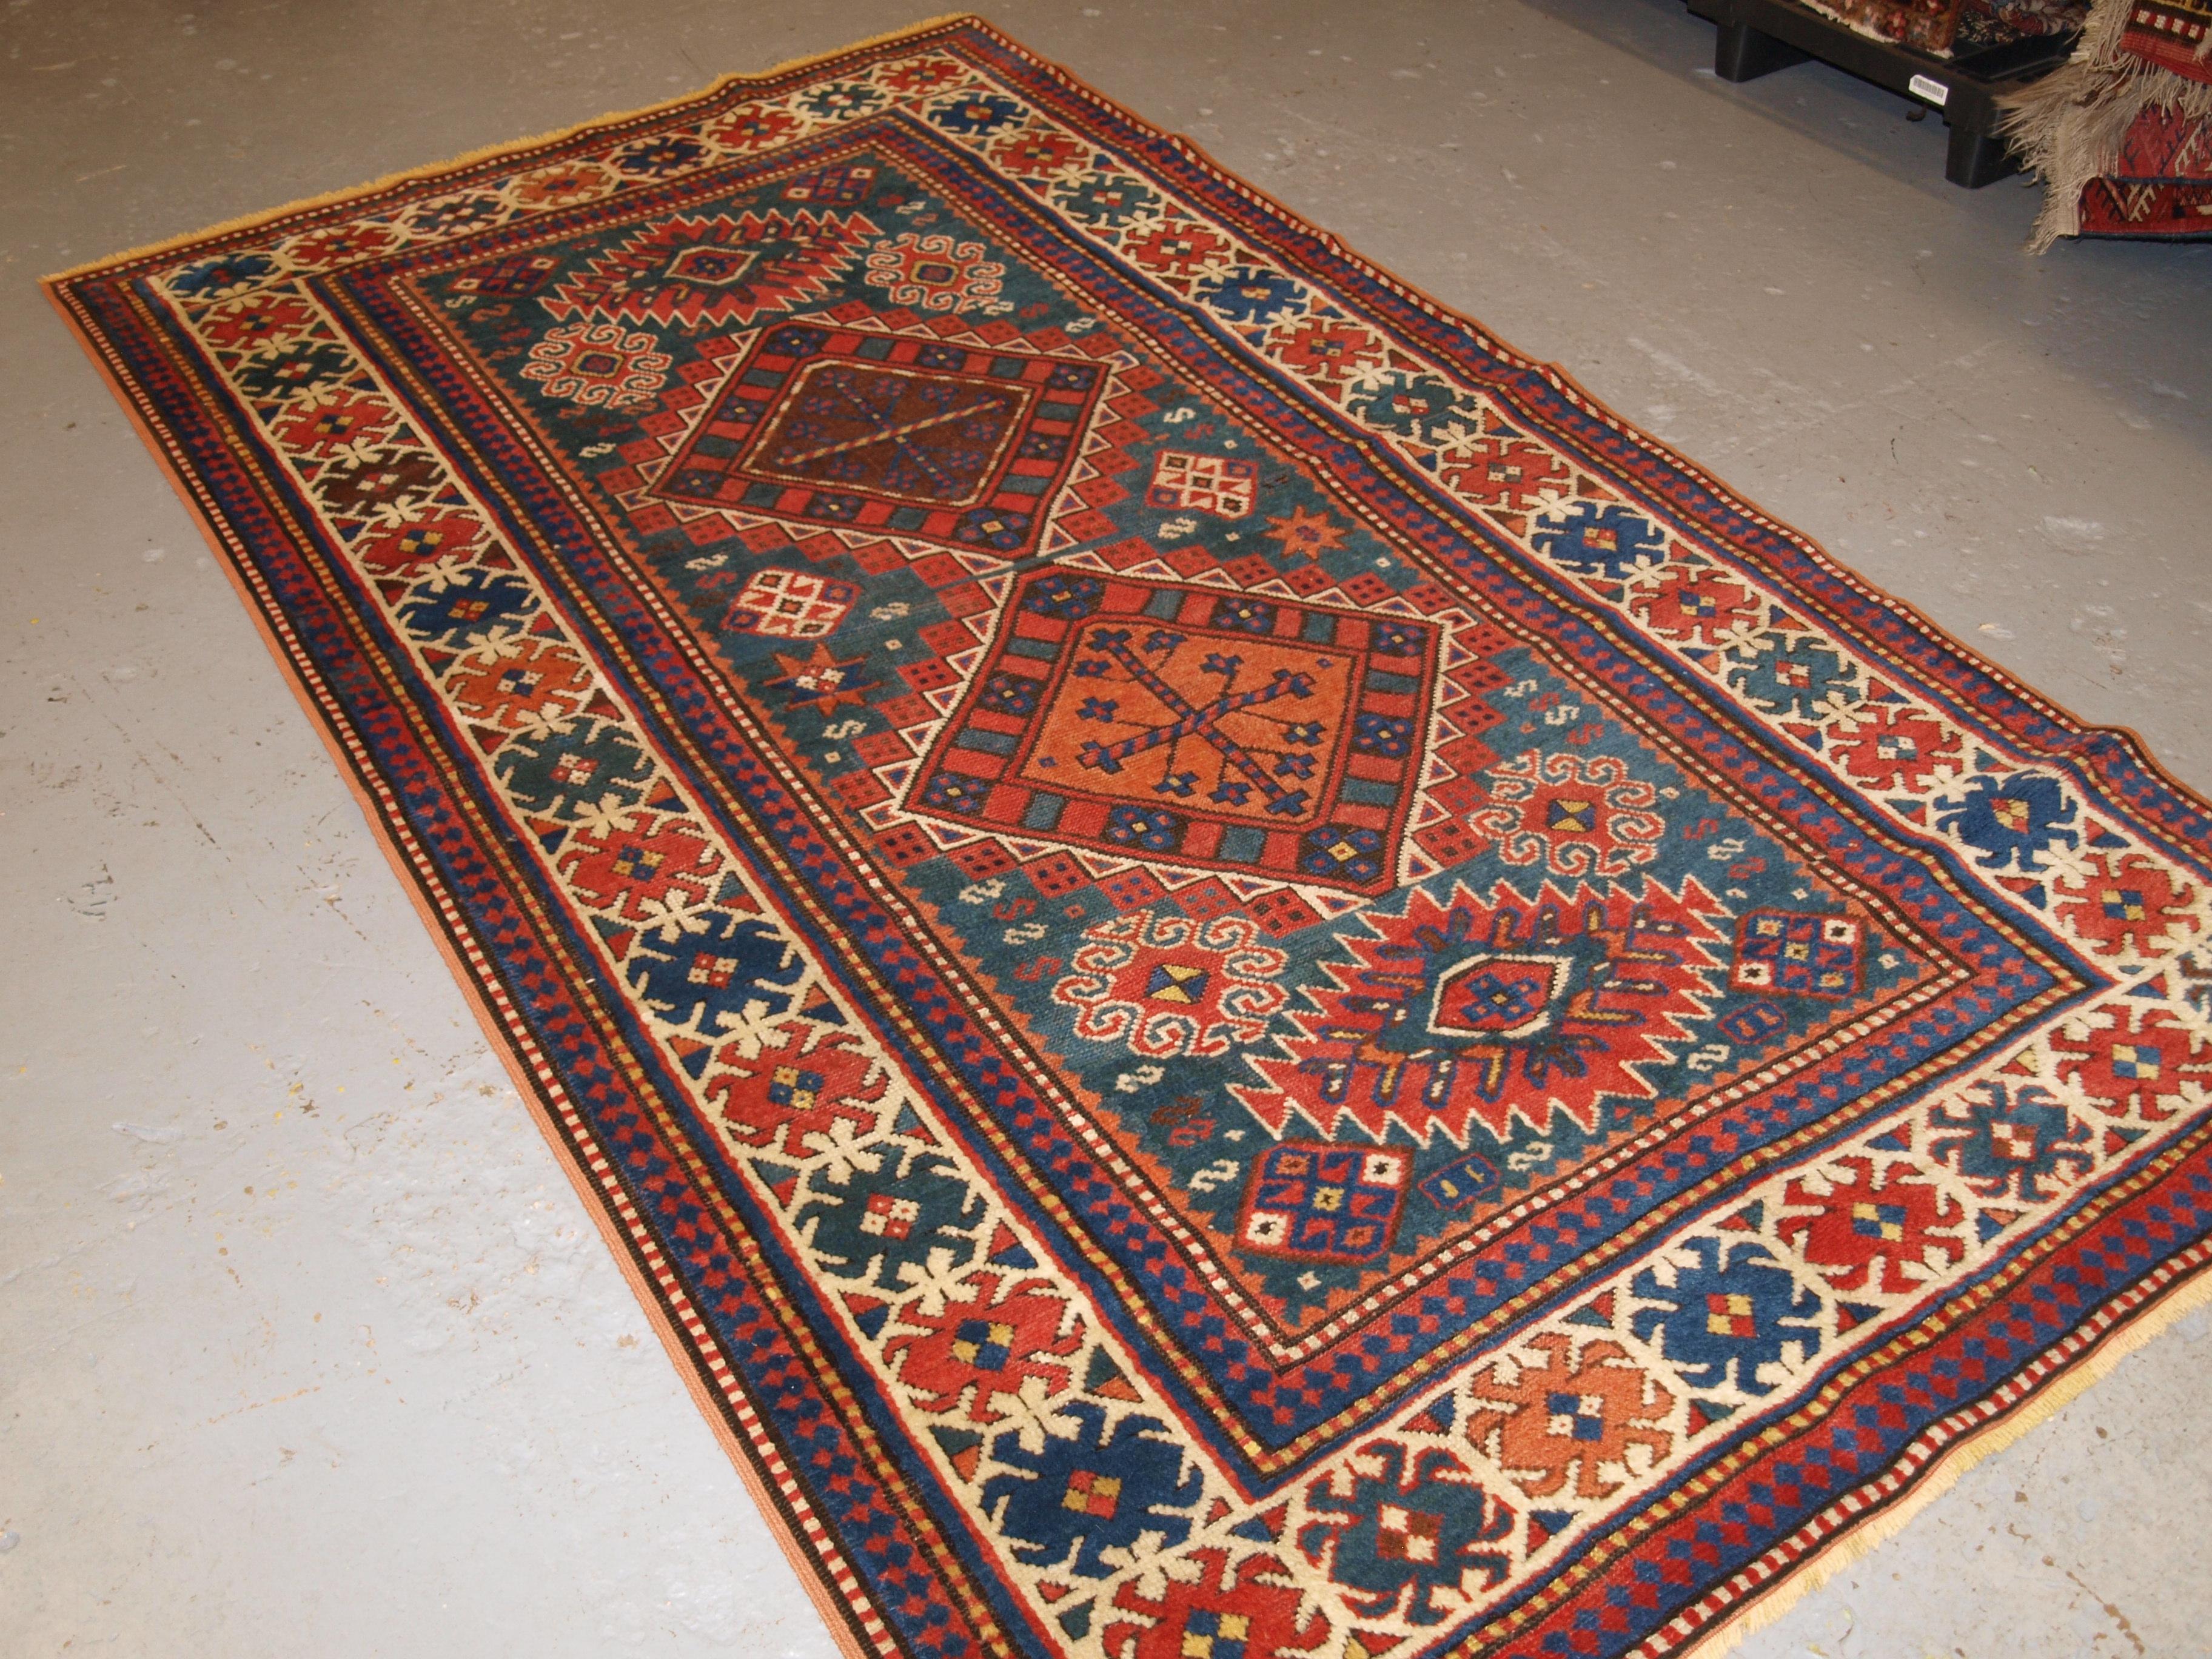 Un bon exemple de tapis caucasien Karachov Kazak avec le motif traditionnel du médaillon lié, sur un fond vert clair. Le tapis est composé de quatre médaillons reliés entre eux sur un fond vert marin. Les combinaisons de couleurs en font un tapis